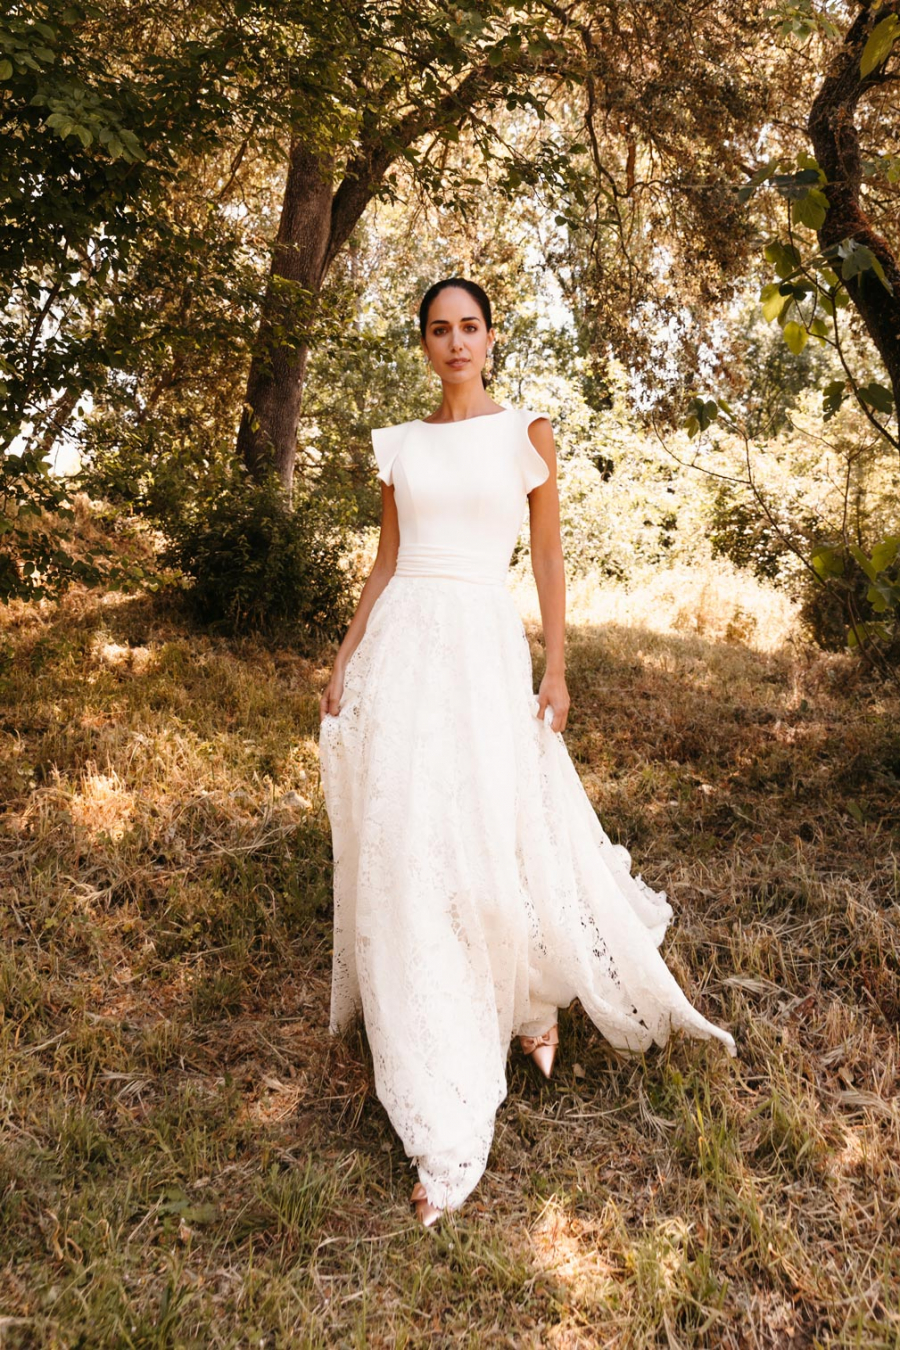 Vestidos de novia dos en uno: la tendencia más original - Silvia Fernandez